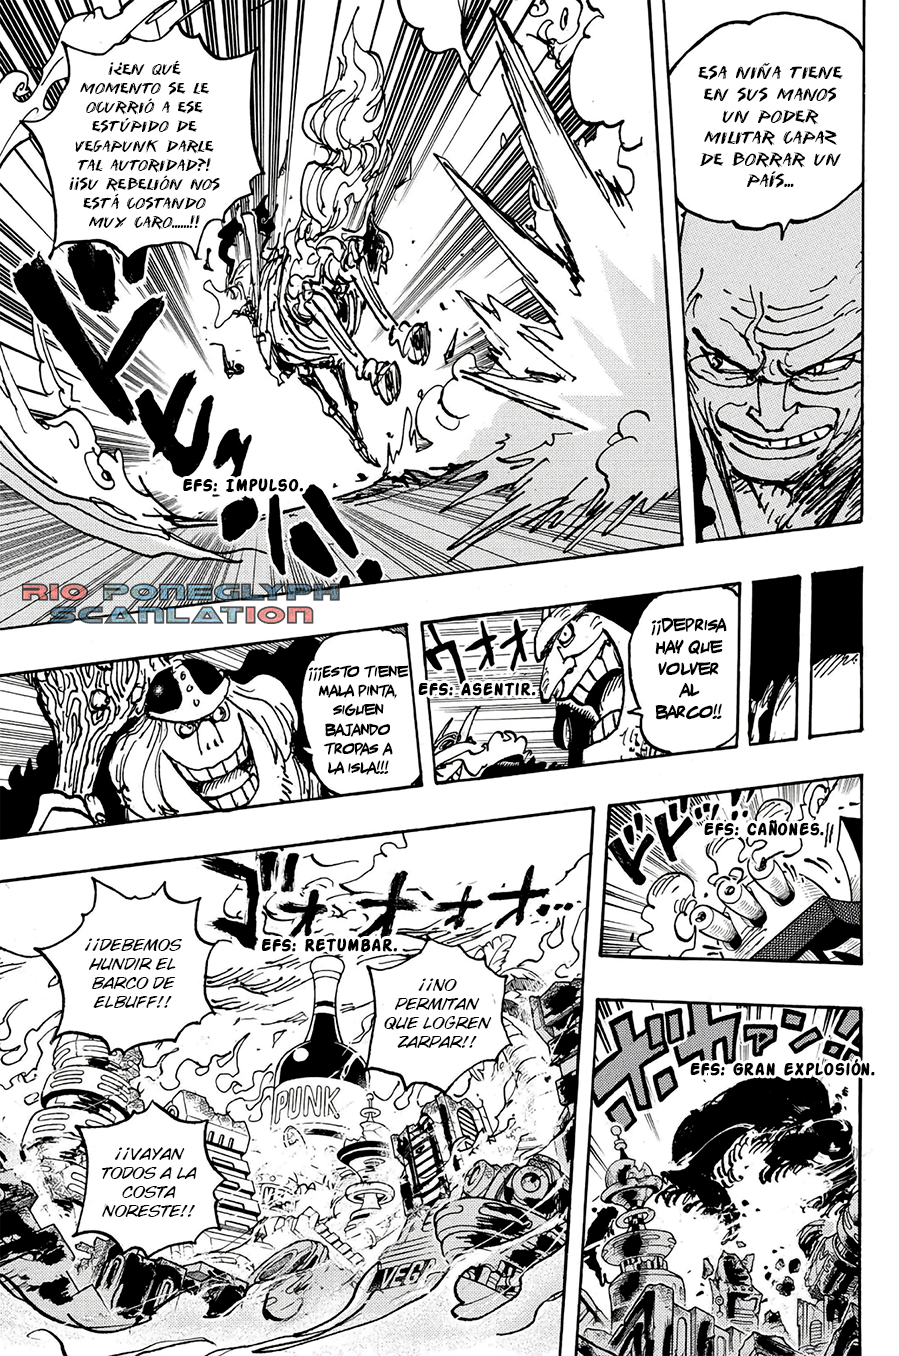 español - One Piece Manga 1112 [Español] [Rio Poneglyph Scans] 02-2